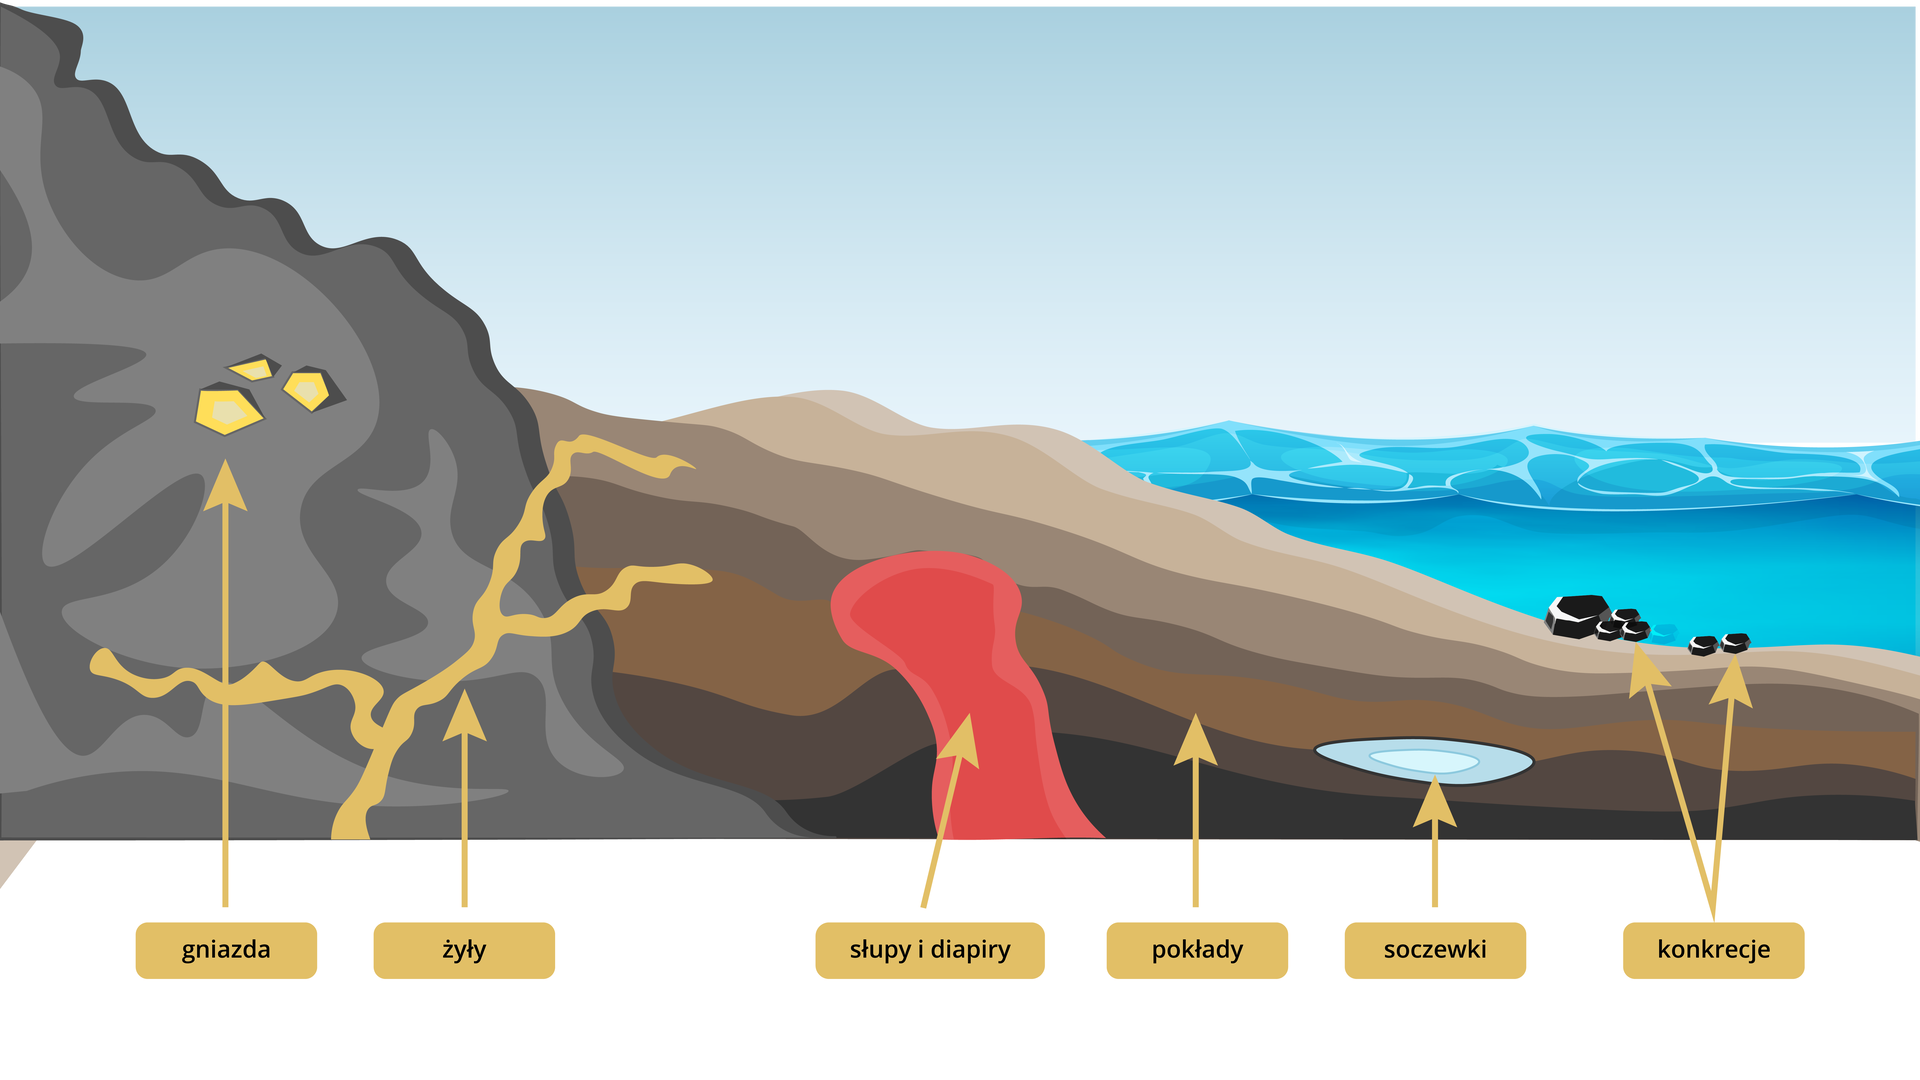 Grafika przedstawia formy złóż. Z lewej strony znajduje się skała, potem pokłady osadów i woda. W skale znajdują się gniazda o ostrych krawędziach oraz żyły odchodzące z głębi w górę i w bok skały. Słupy i diapiry odchodzą z głębi w górę pokładów. W pokładach znajdują się soczewki wypełnione wodą. Na dnie zbiornika wodnego znajdują się okrągłe konkrecje.